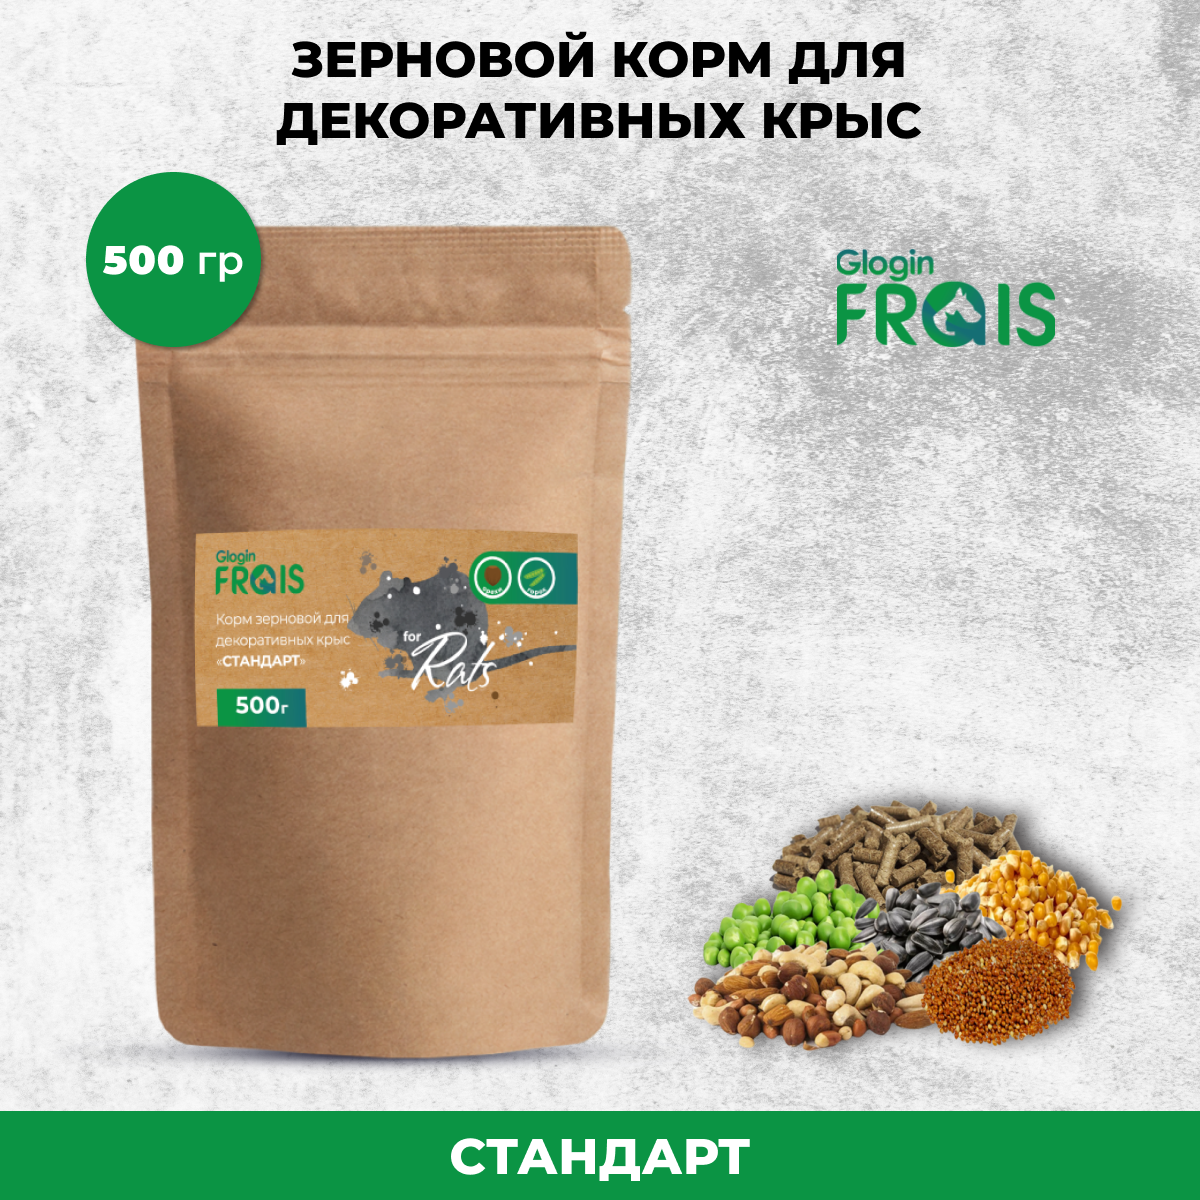 Сухой корм для декоративных крыс Glogin FRAIS Стандарт, зерновой, 500 г